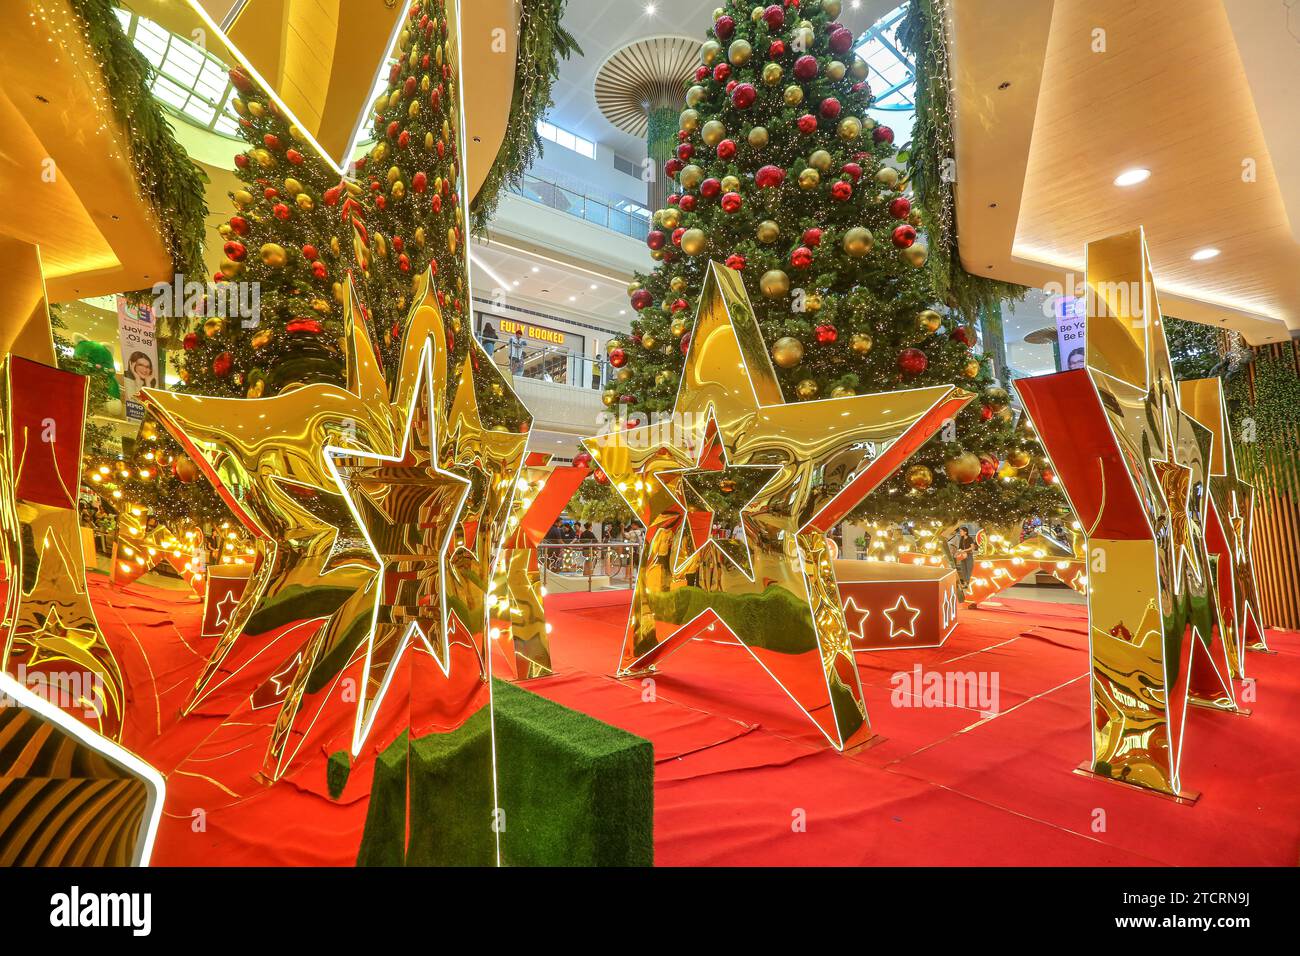 Riesige goldene reflektierende Sterne, Weihnachtsdekoration, philippinisches Einkaufszentrum, Weihnachtsambiente, Feiertagsatmosphäre, Sternspiegel, Baumkugeln Stockfoto